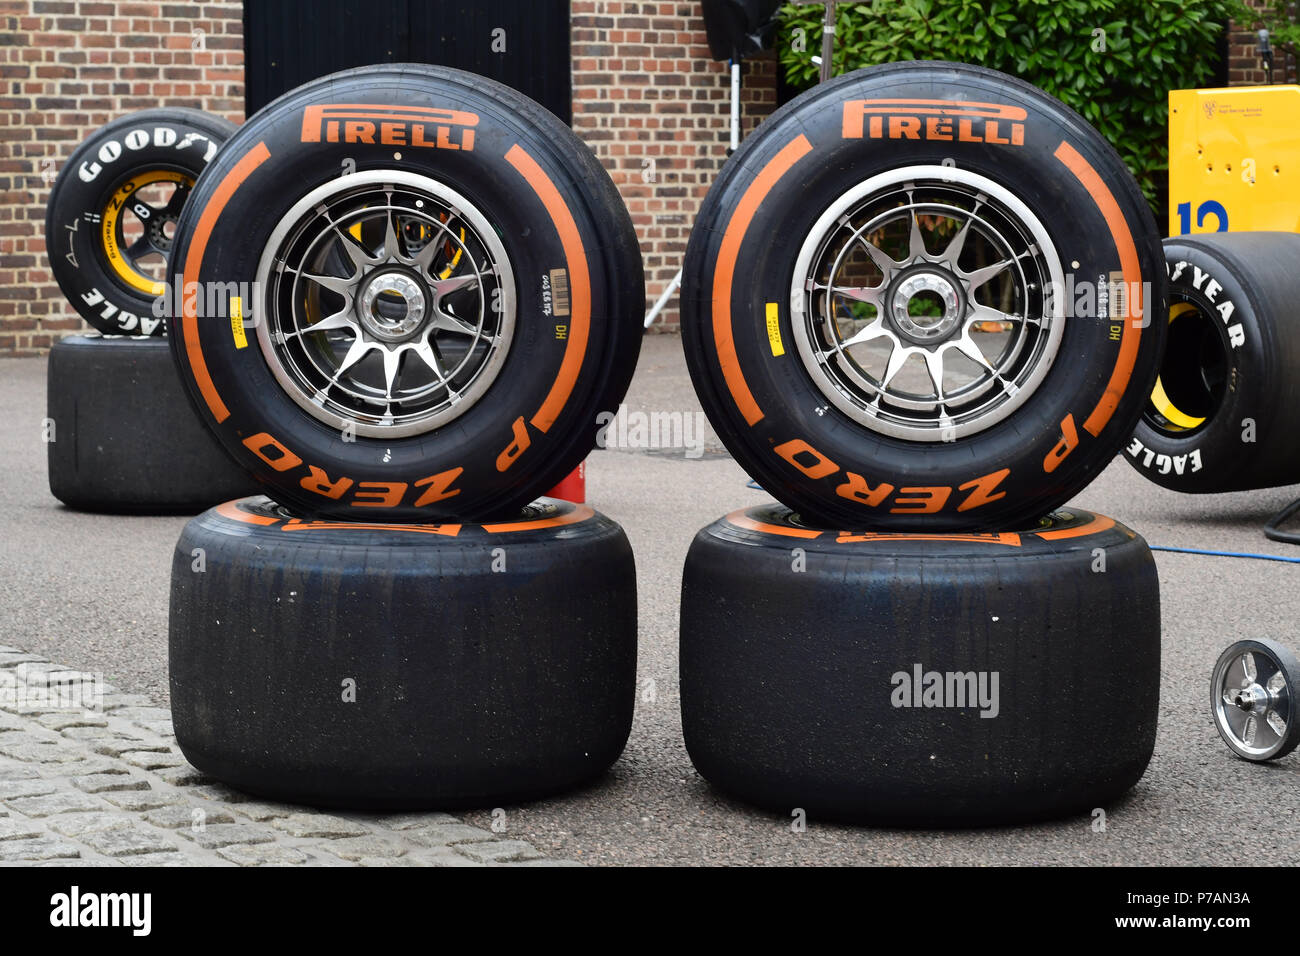 Les pneus Pirelli à l'affichage Grand Prix 2018 ballon tenu au Club de Hurlingham le 4 juillet 2018 à Londres, en Angleterre. Banque D'Images